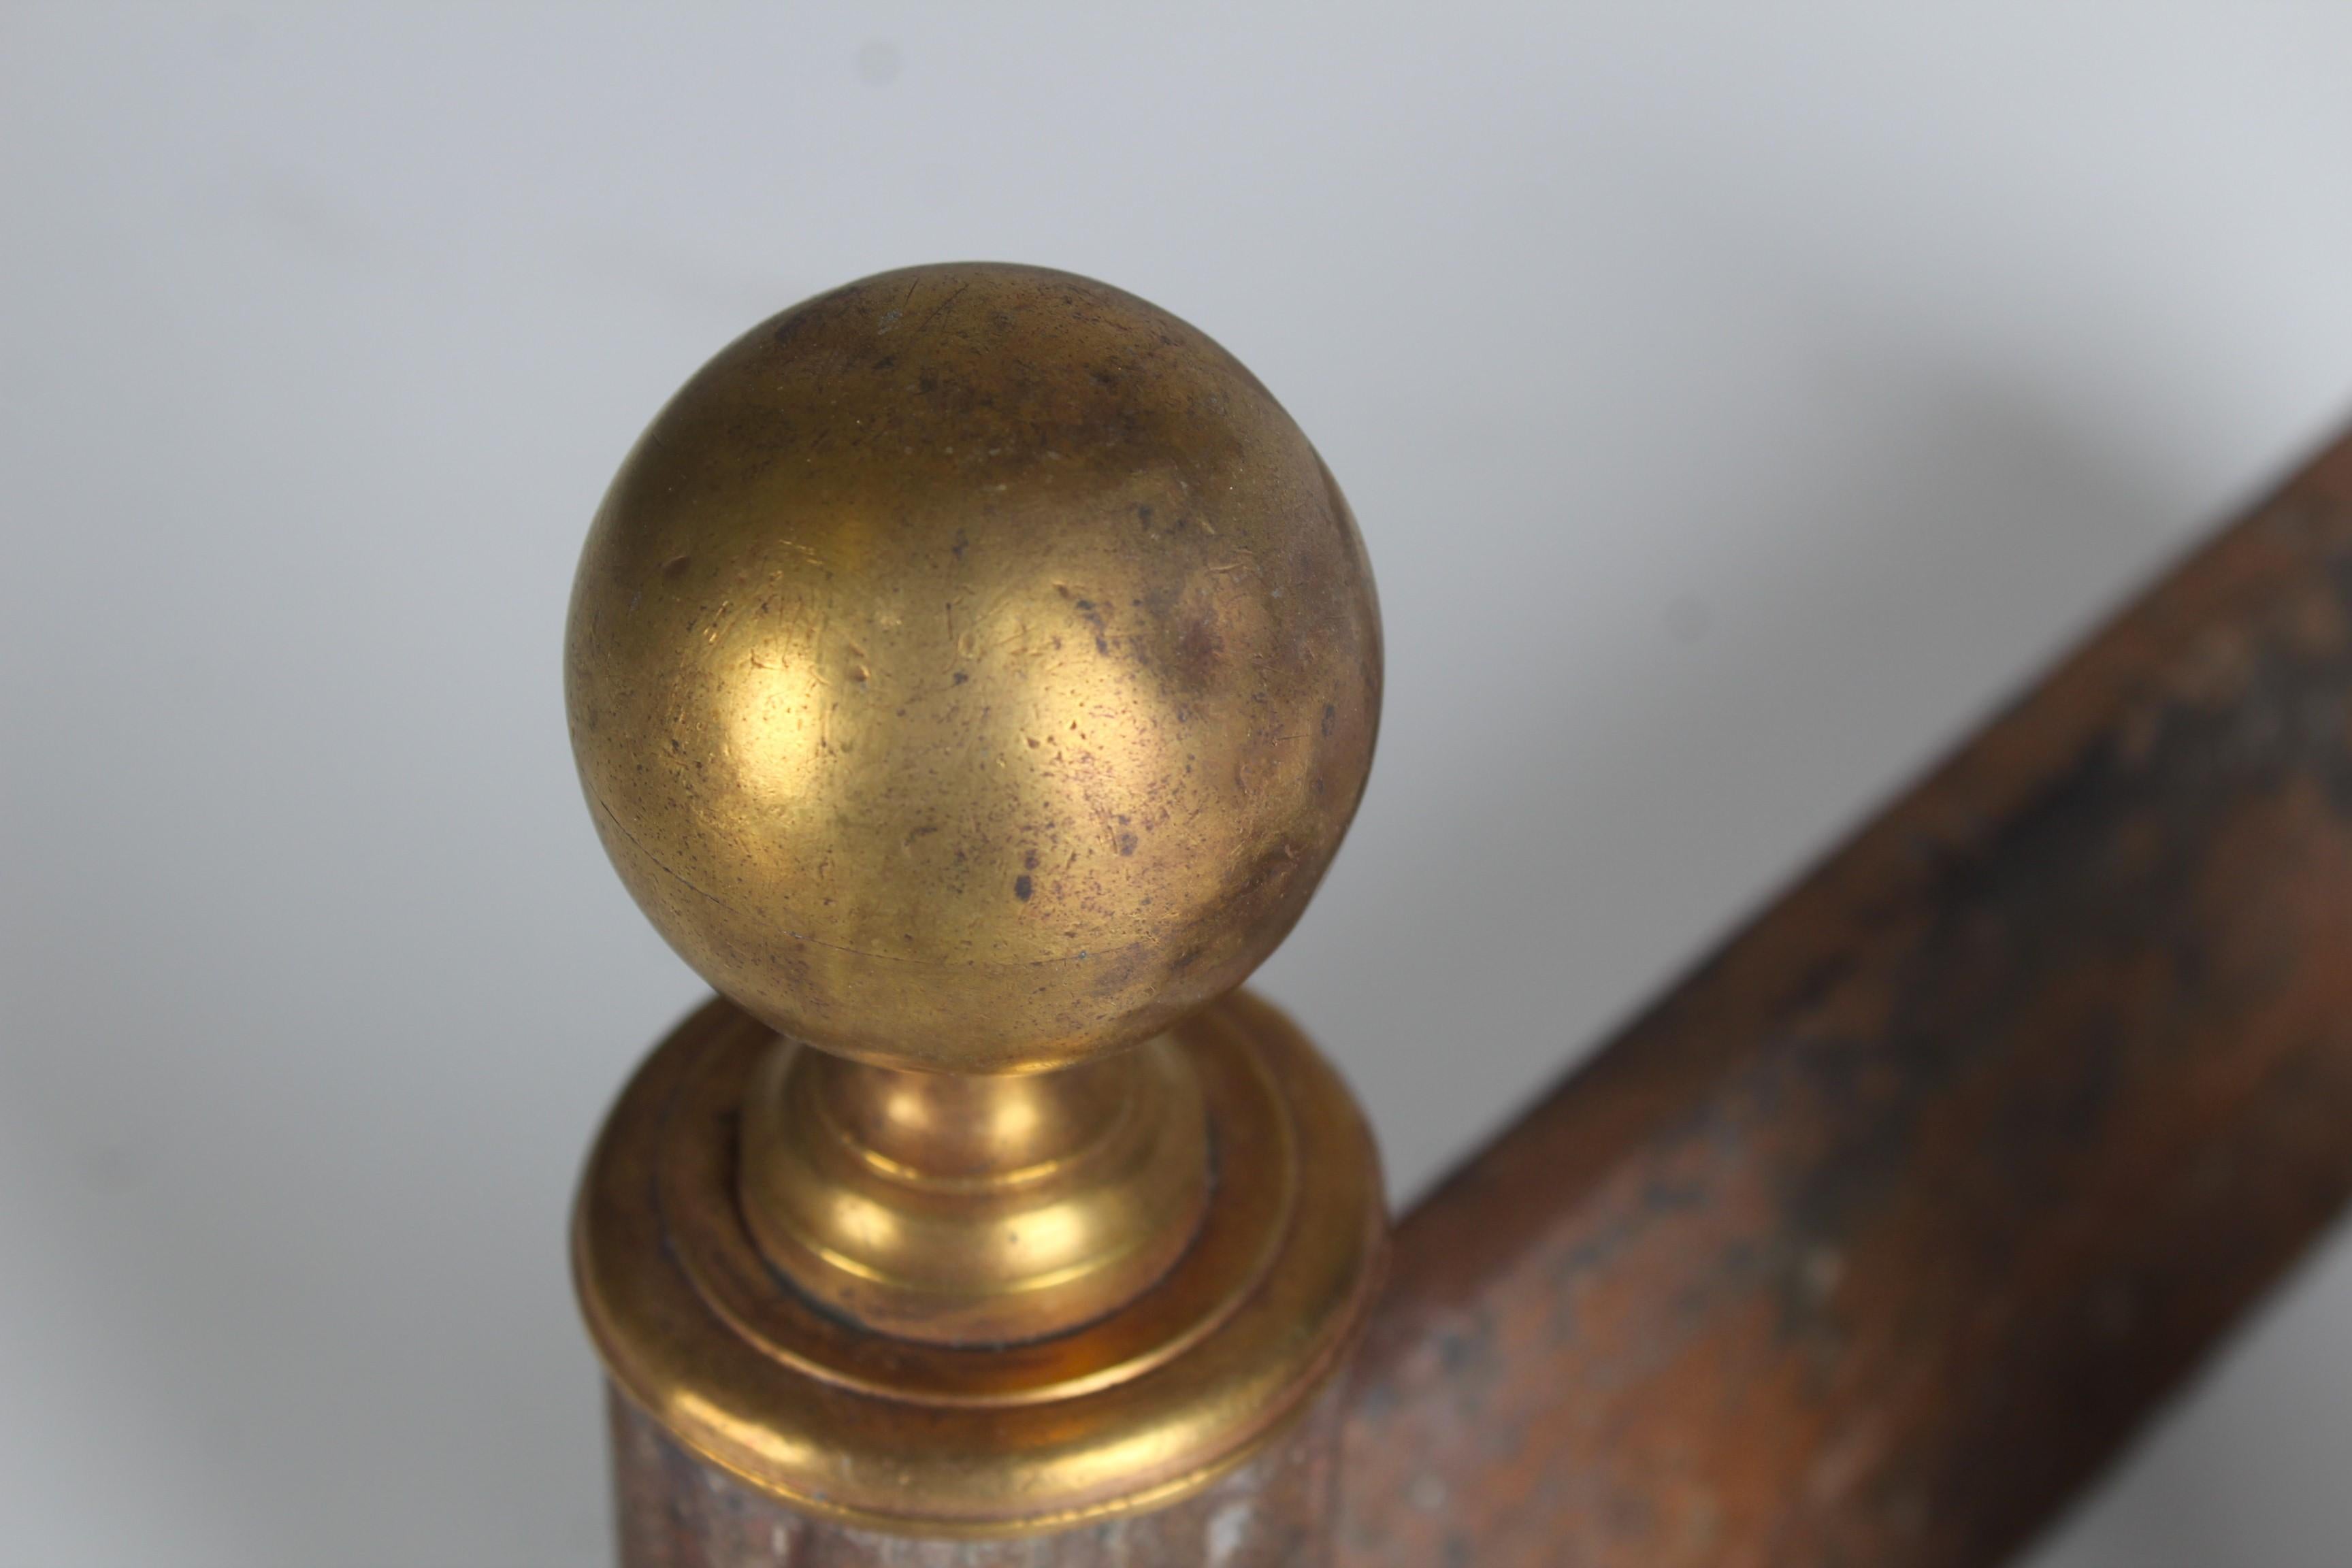 Ein Paar wundervolle Andirons mit einer Messingkugel als Dekoration.
Frankreich, um 1850.
Solides Eisen in altersgemäß gutem Zustand.

Firedogs werden als Halter für Brennholz in einem Kamin verwendet. Sie sind auch als Feuerpferd, Andiron oder